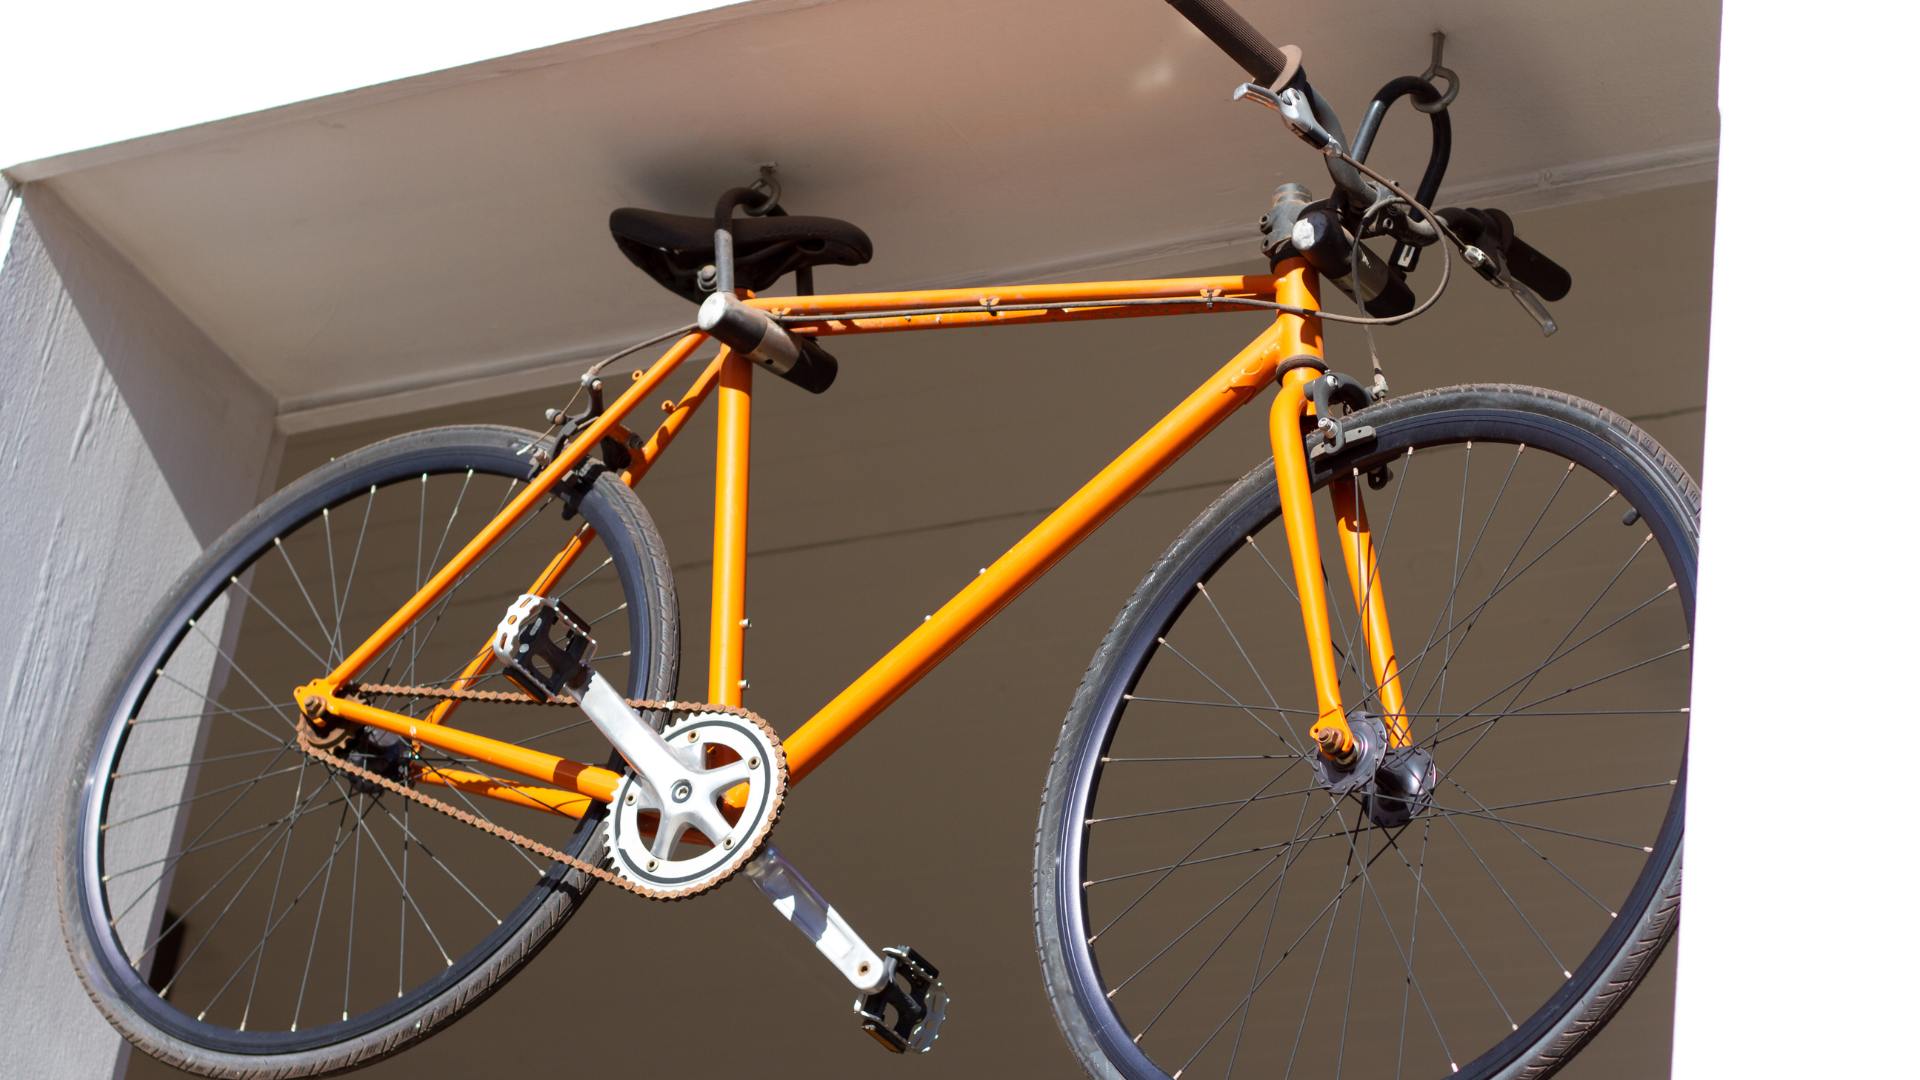 Sonhar com Bicicleta Amarela: Qual é o Significado?